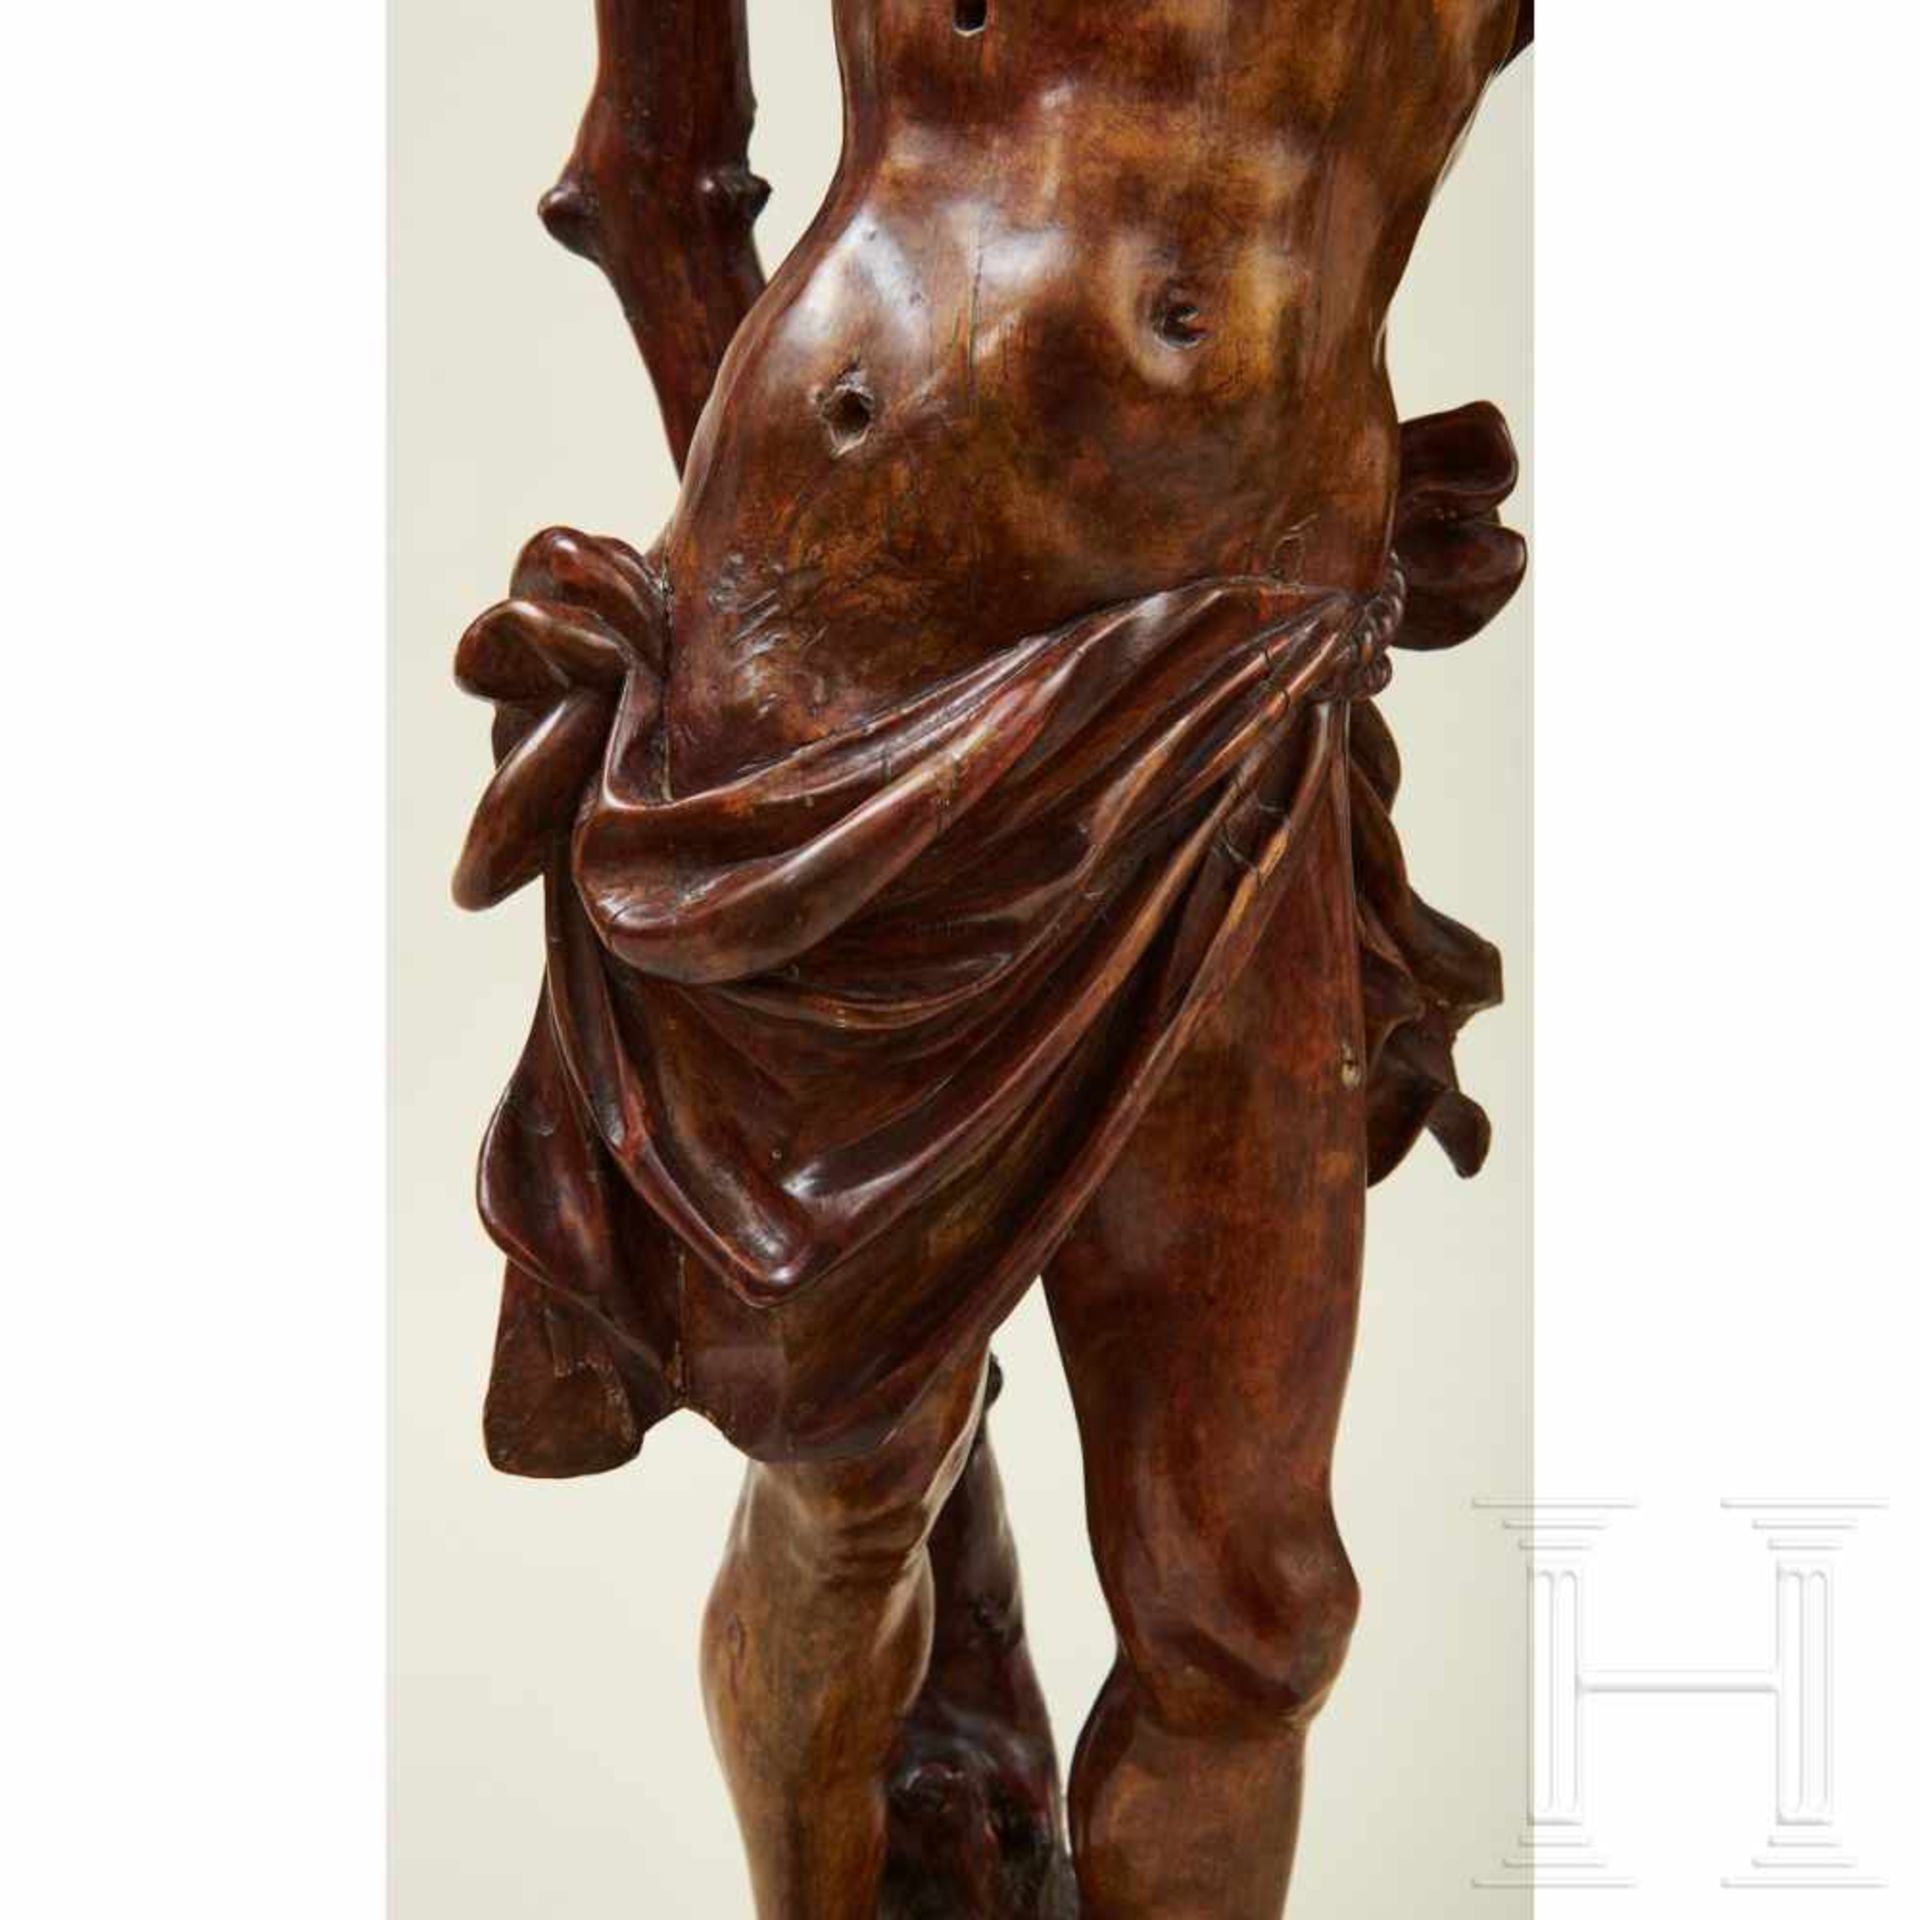 Große Skulptur des Heiligen Sebastians, Süddeutschland oder Italien, 1. Hälfte 16. Jhdt. - Bild 3 aus 18